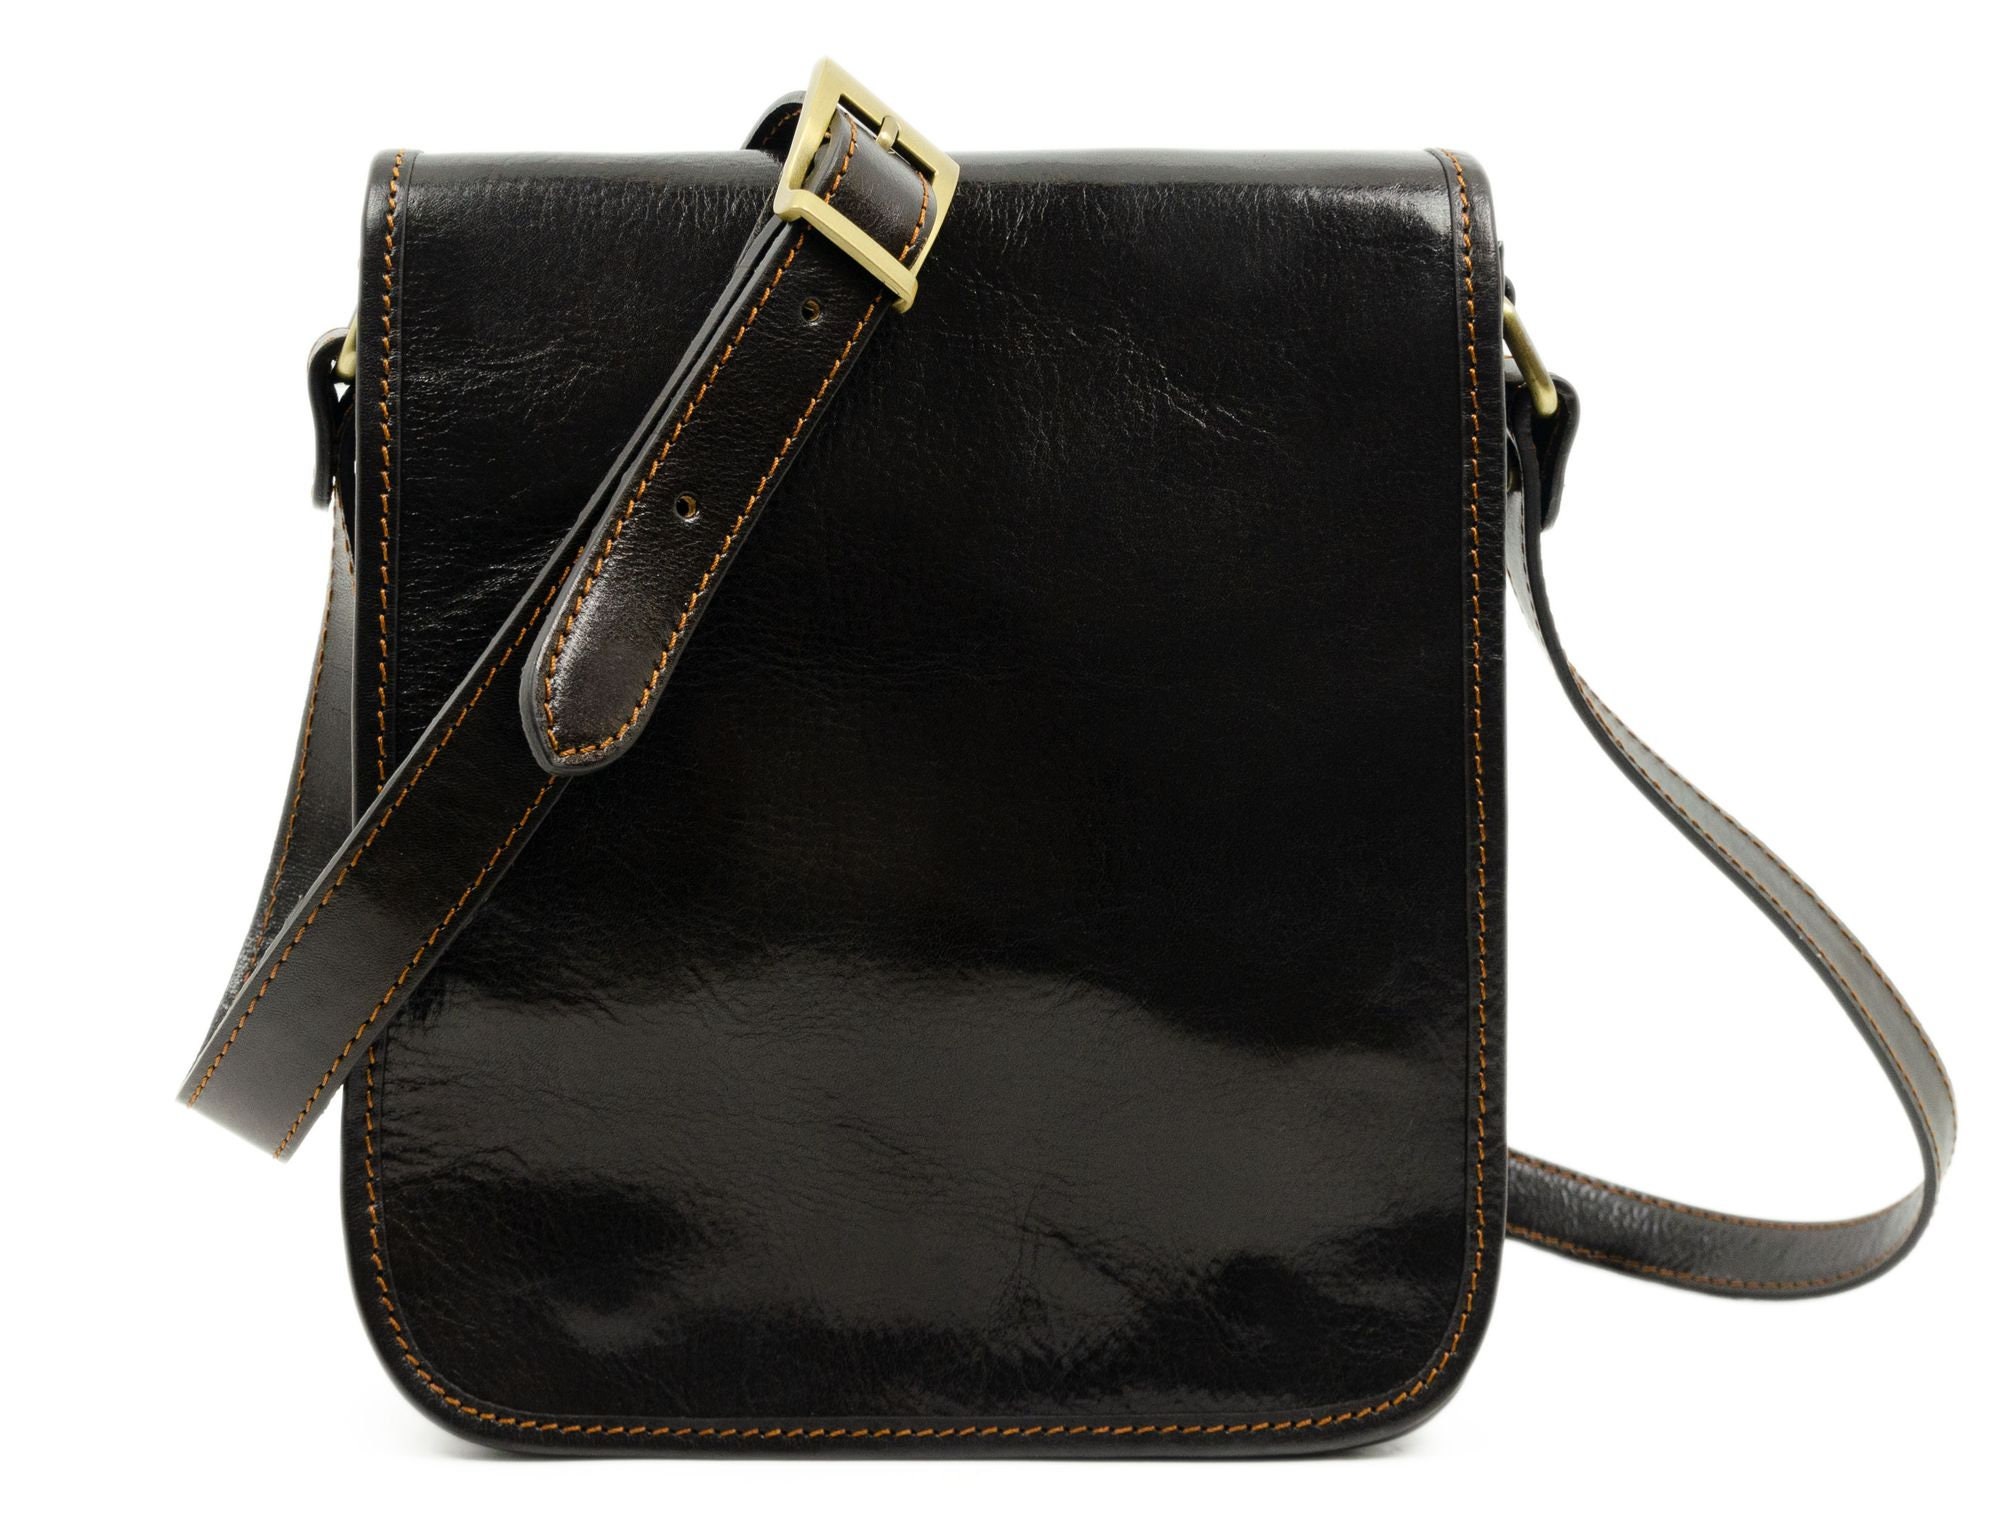 Leather Messenger Bag for Men Brown Shoulder Bag Full Grain - Etsy